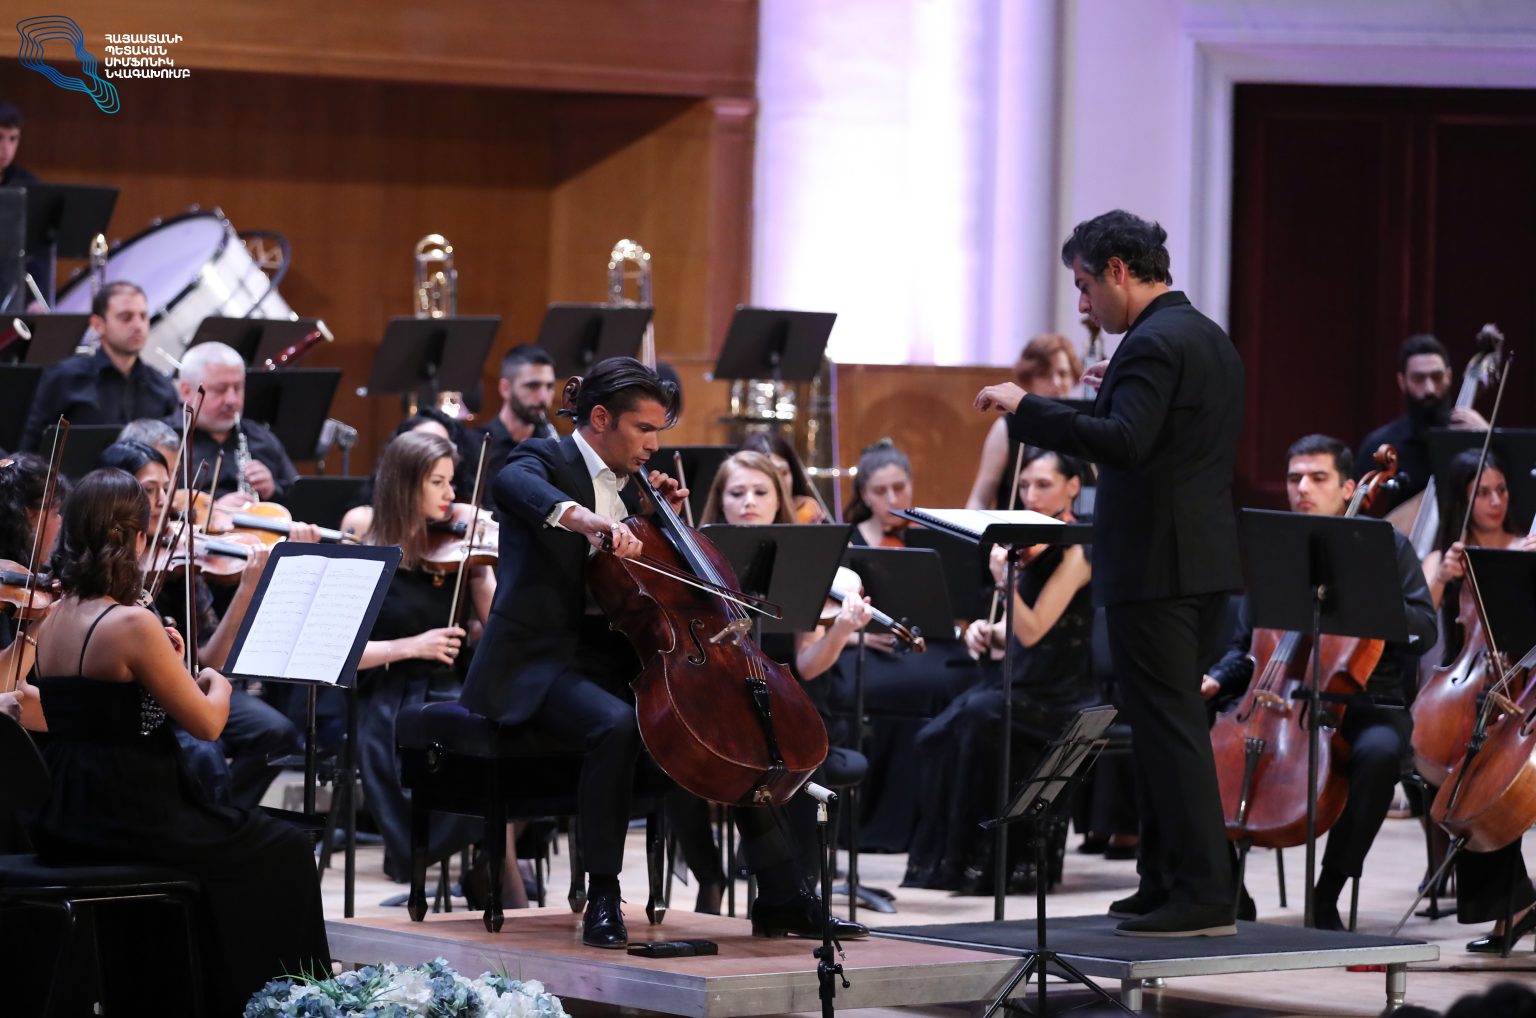 Մեկնարկել է Հայաստանի պետական սիմֆոնիկ նվագախմբի 17-րդ համերգաշրջանը